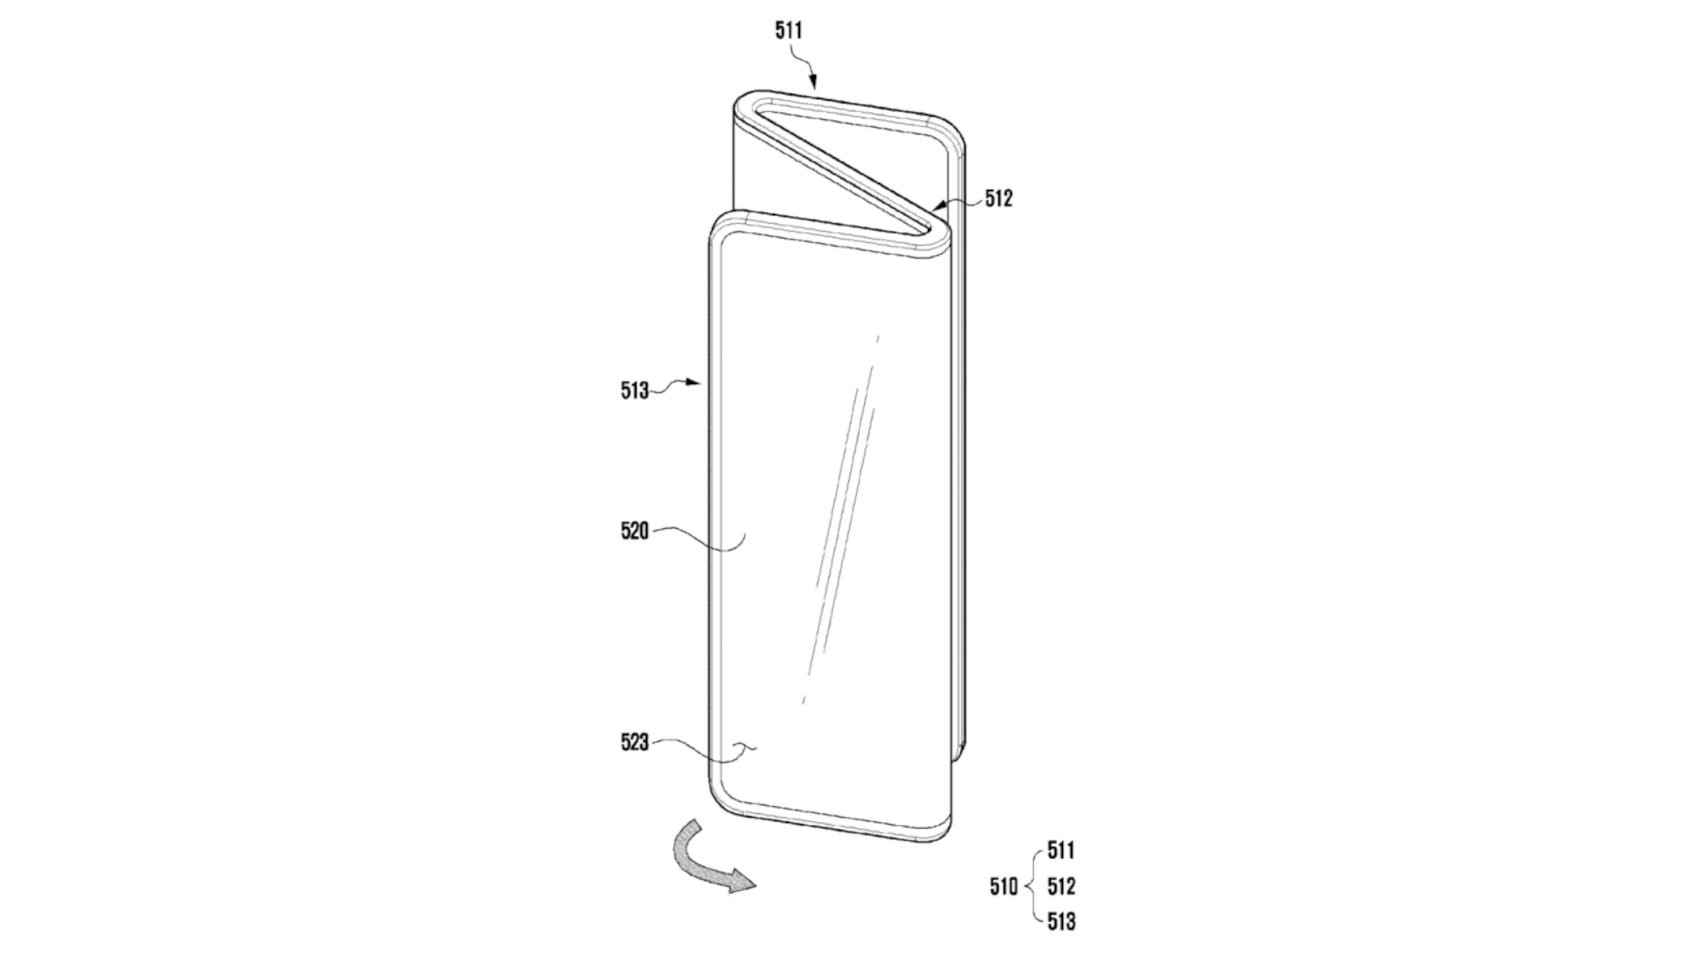 La patente de Samsung de un móvil que se pliega tres veces